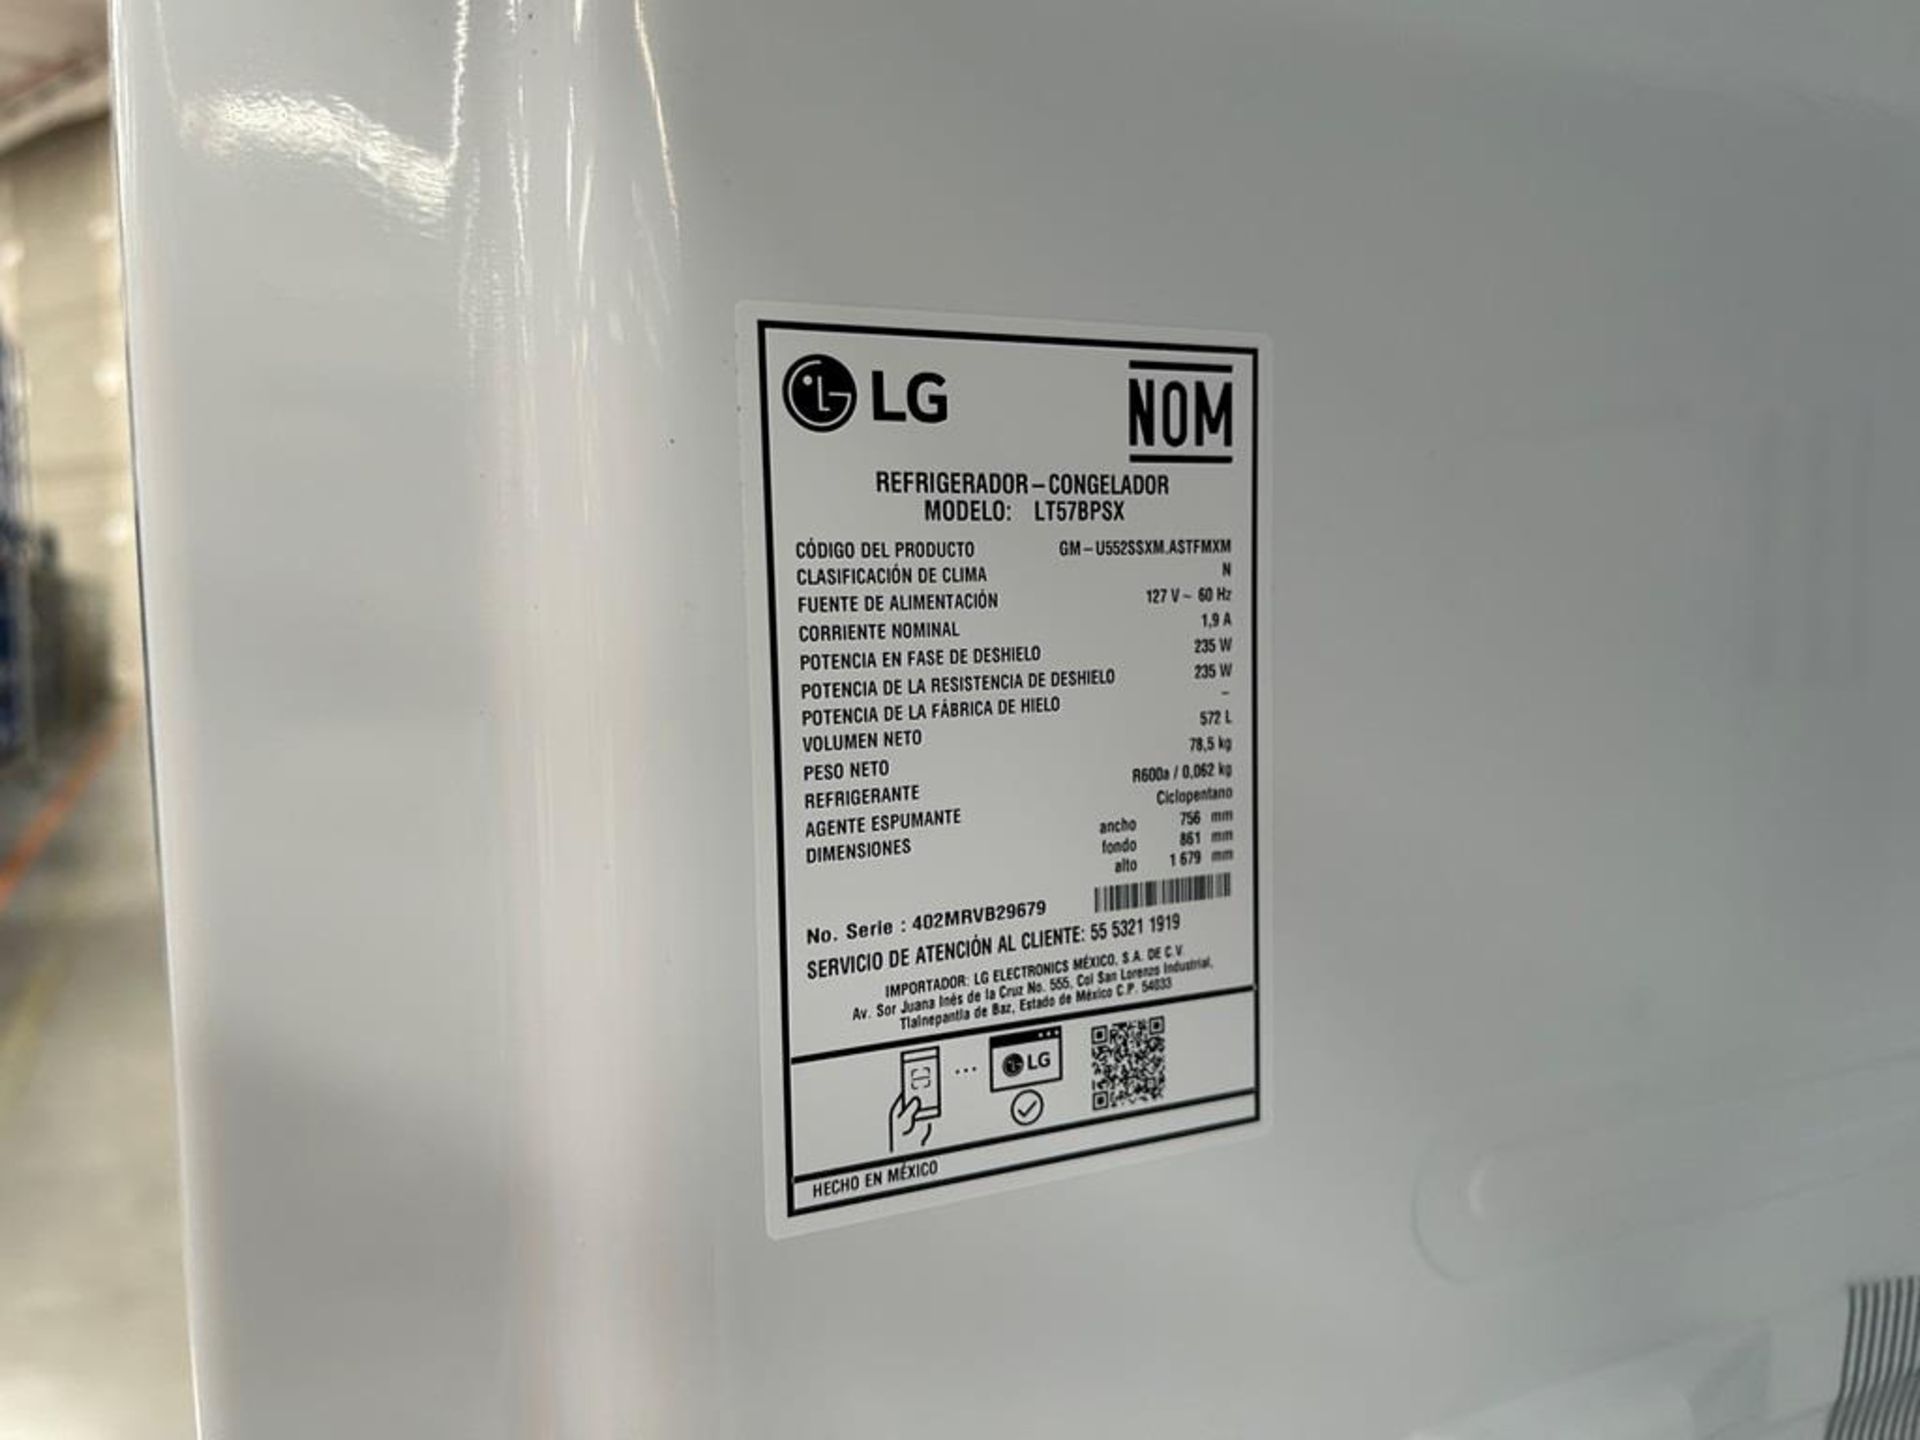 (NUEVO) Refrigerador Marca LG, Modelo LT57BPSX, Serie 29679, Color GRIS - Image 9 of 11